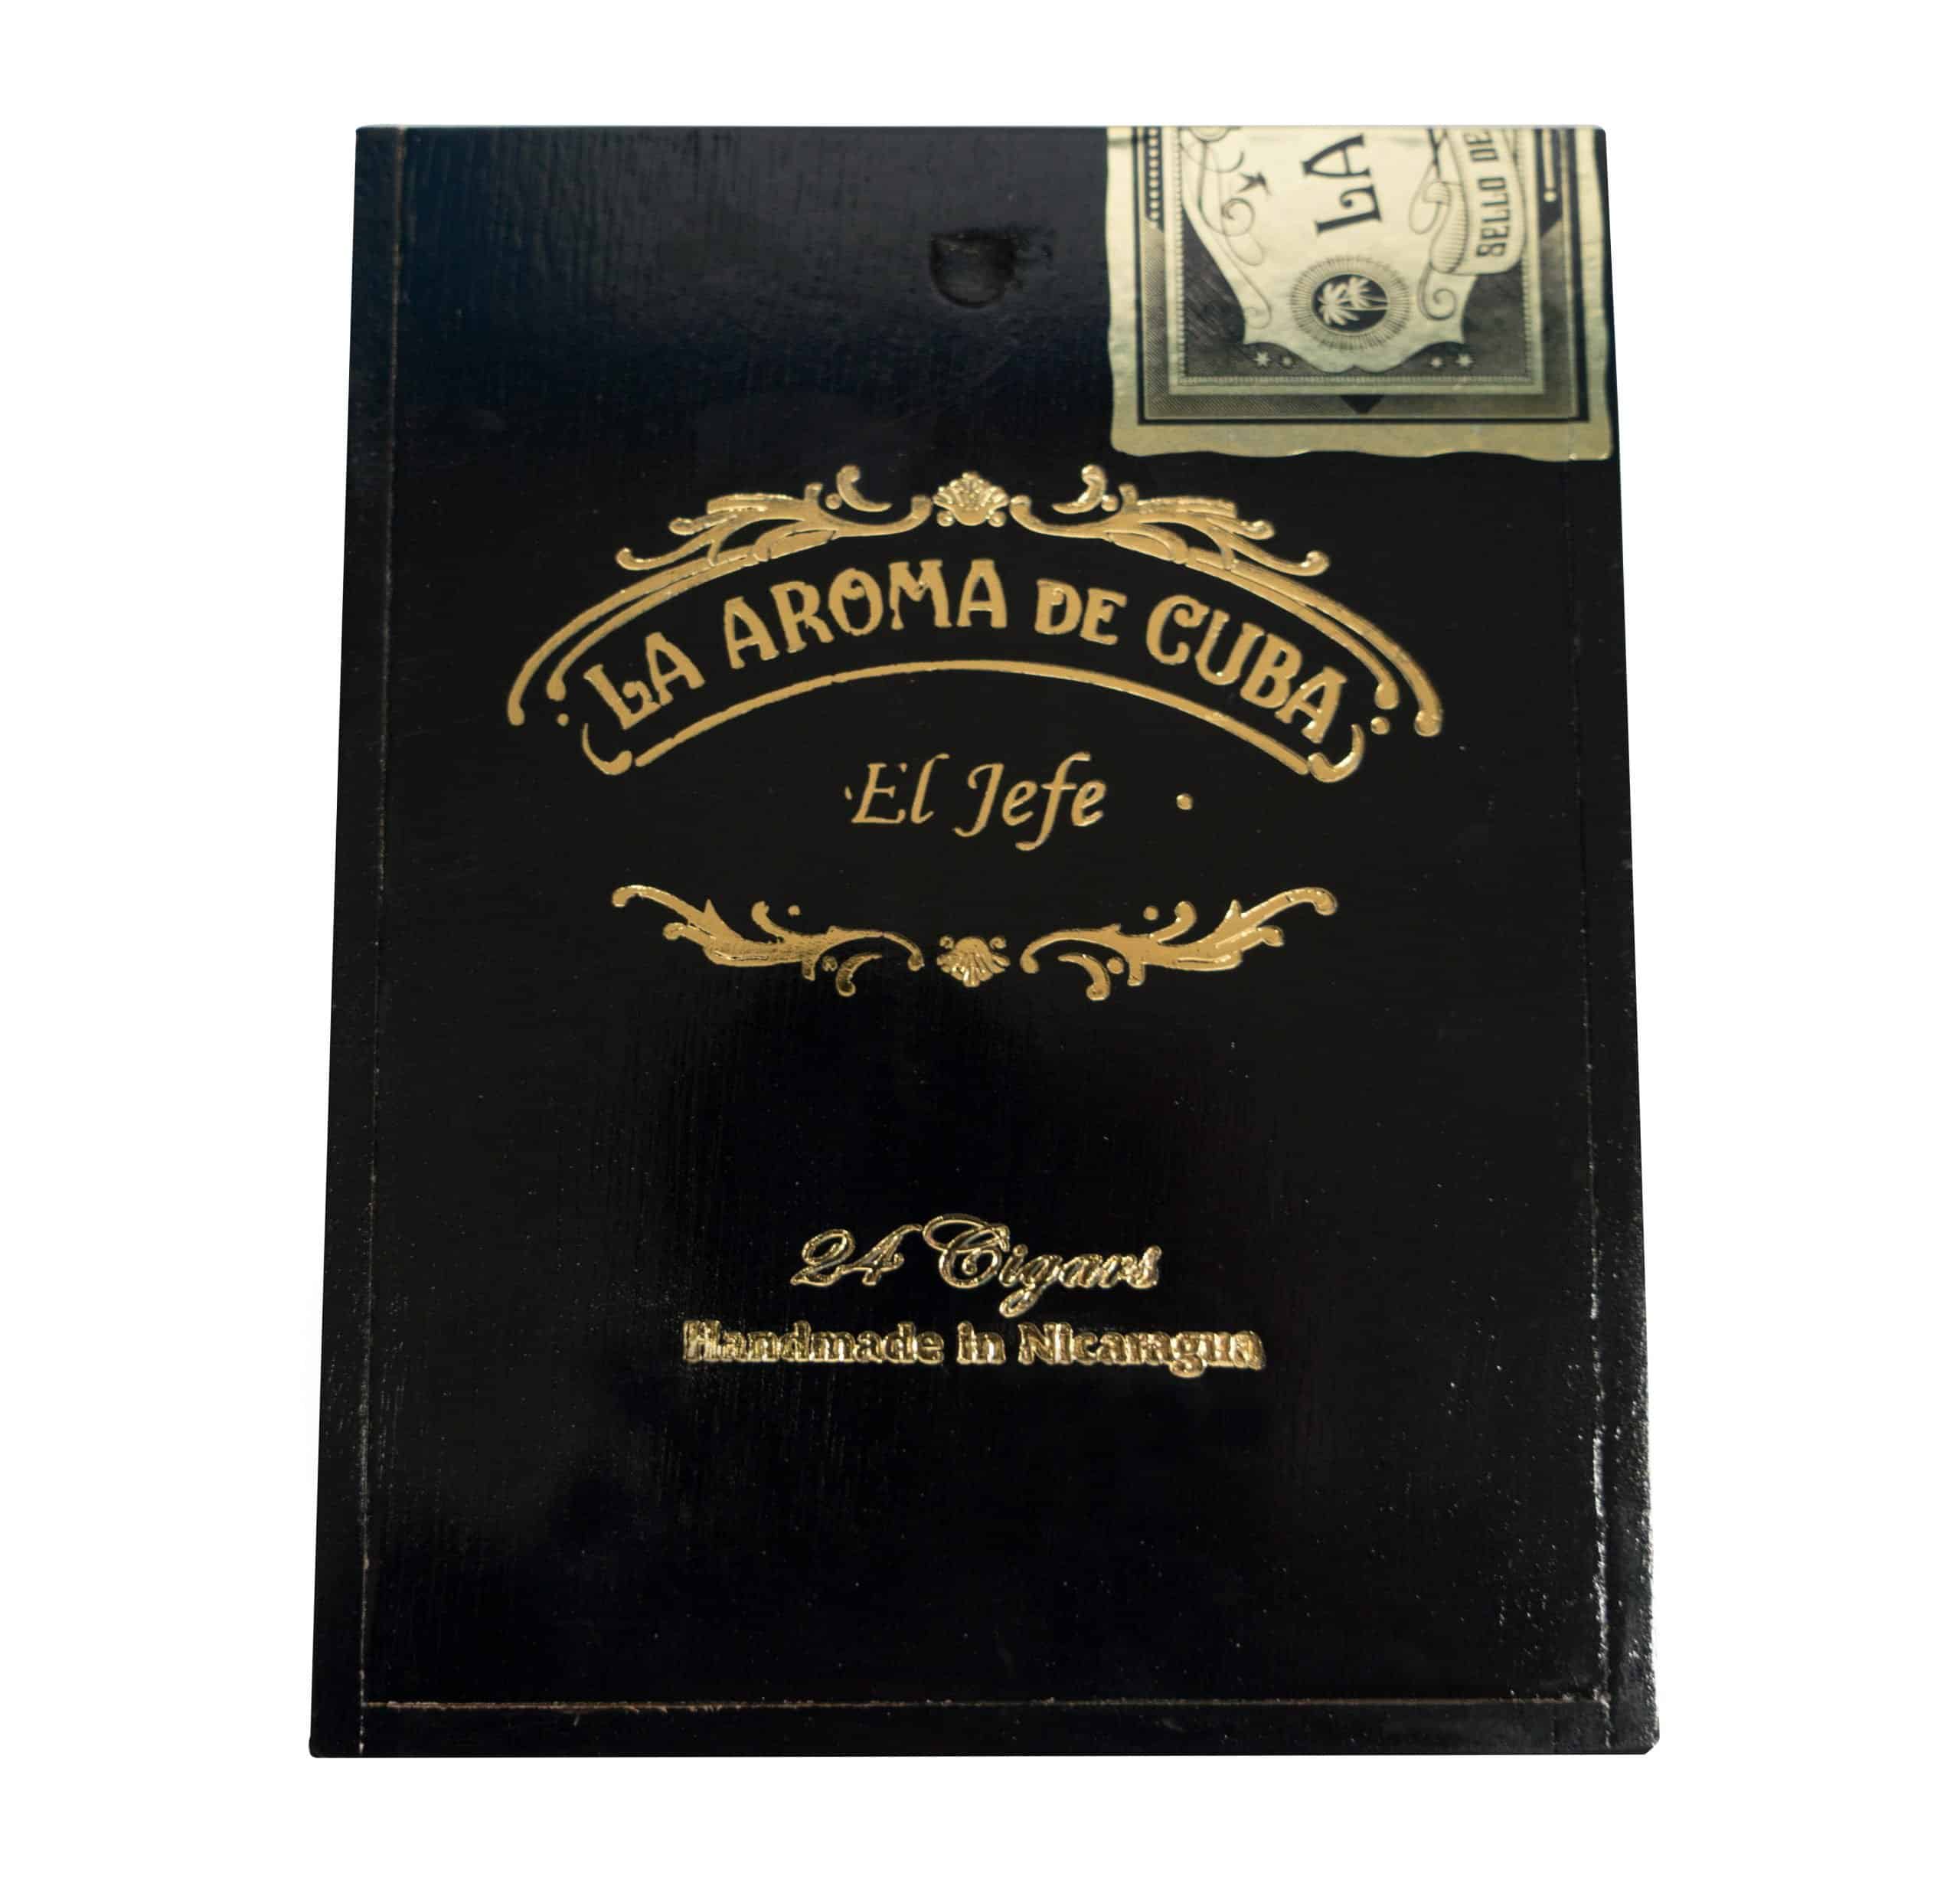 Closed box of La Aroma de Cuba El Jefe cigars